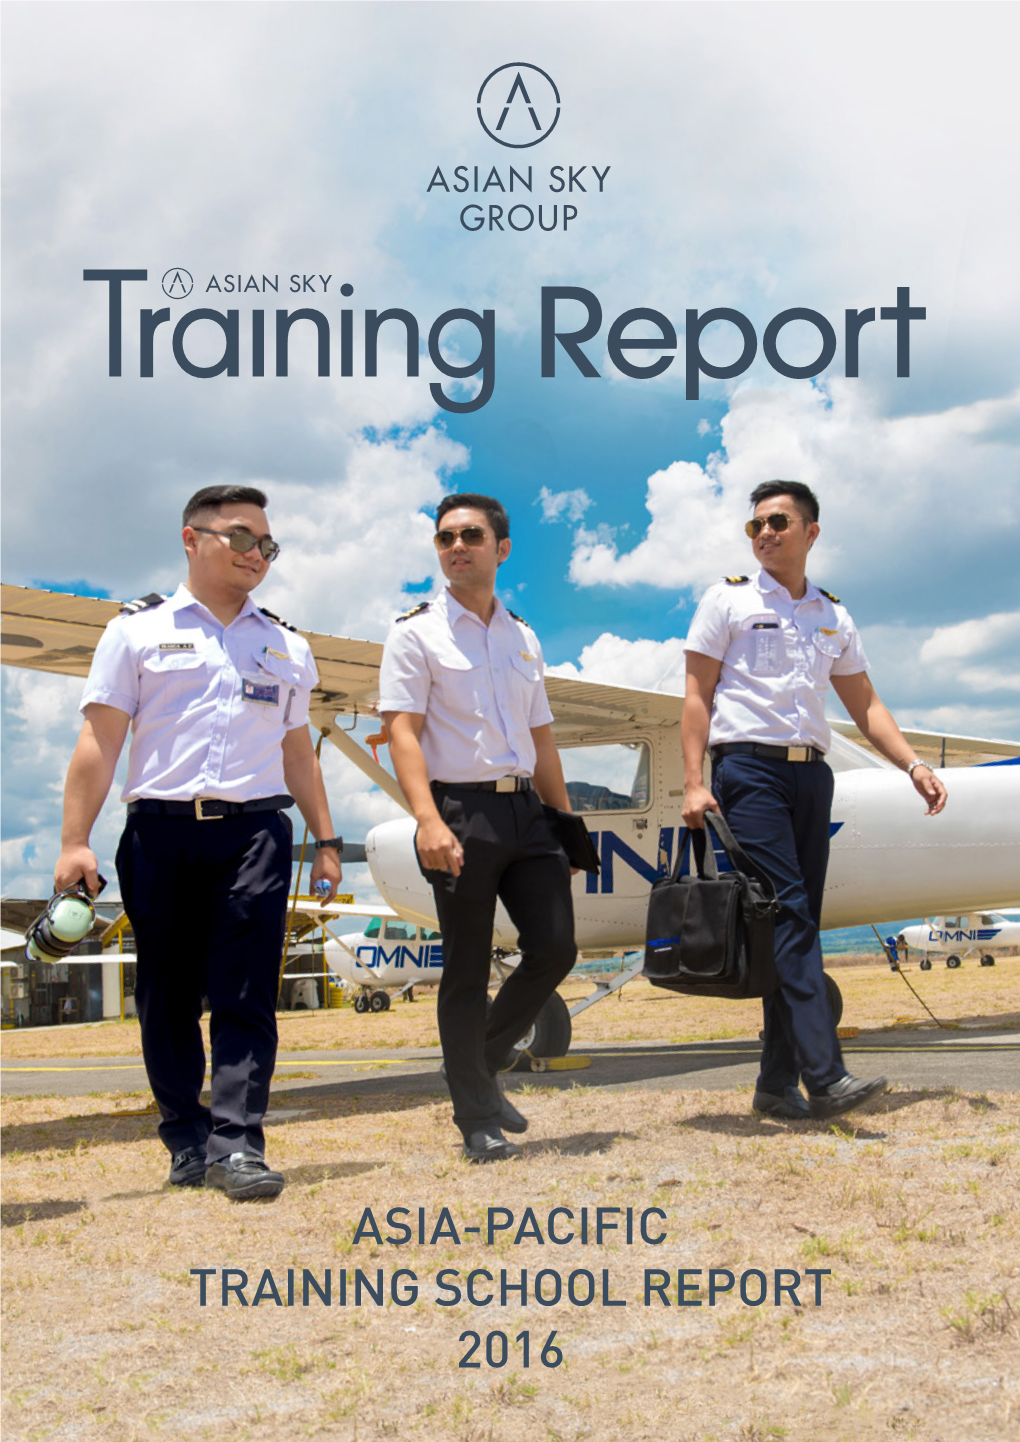 Asia-Pacific Training School Report 2016